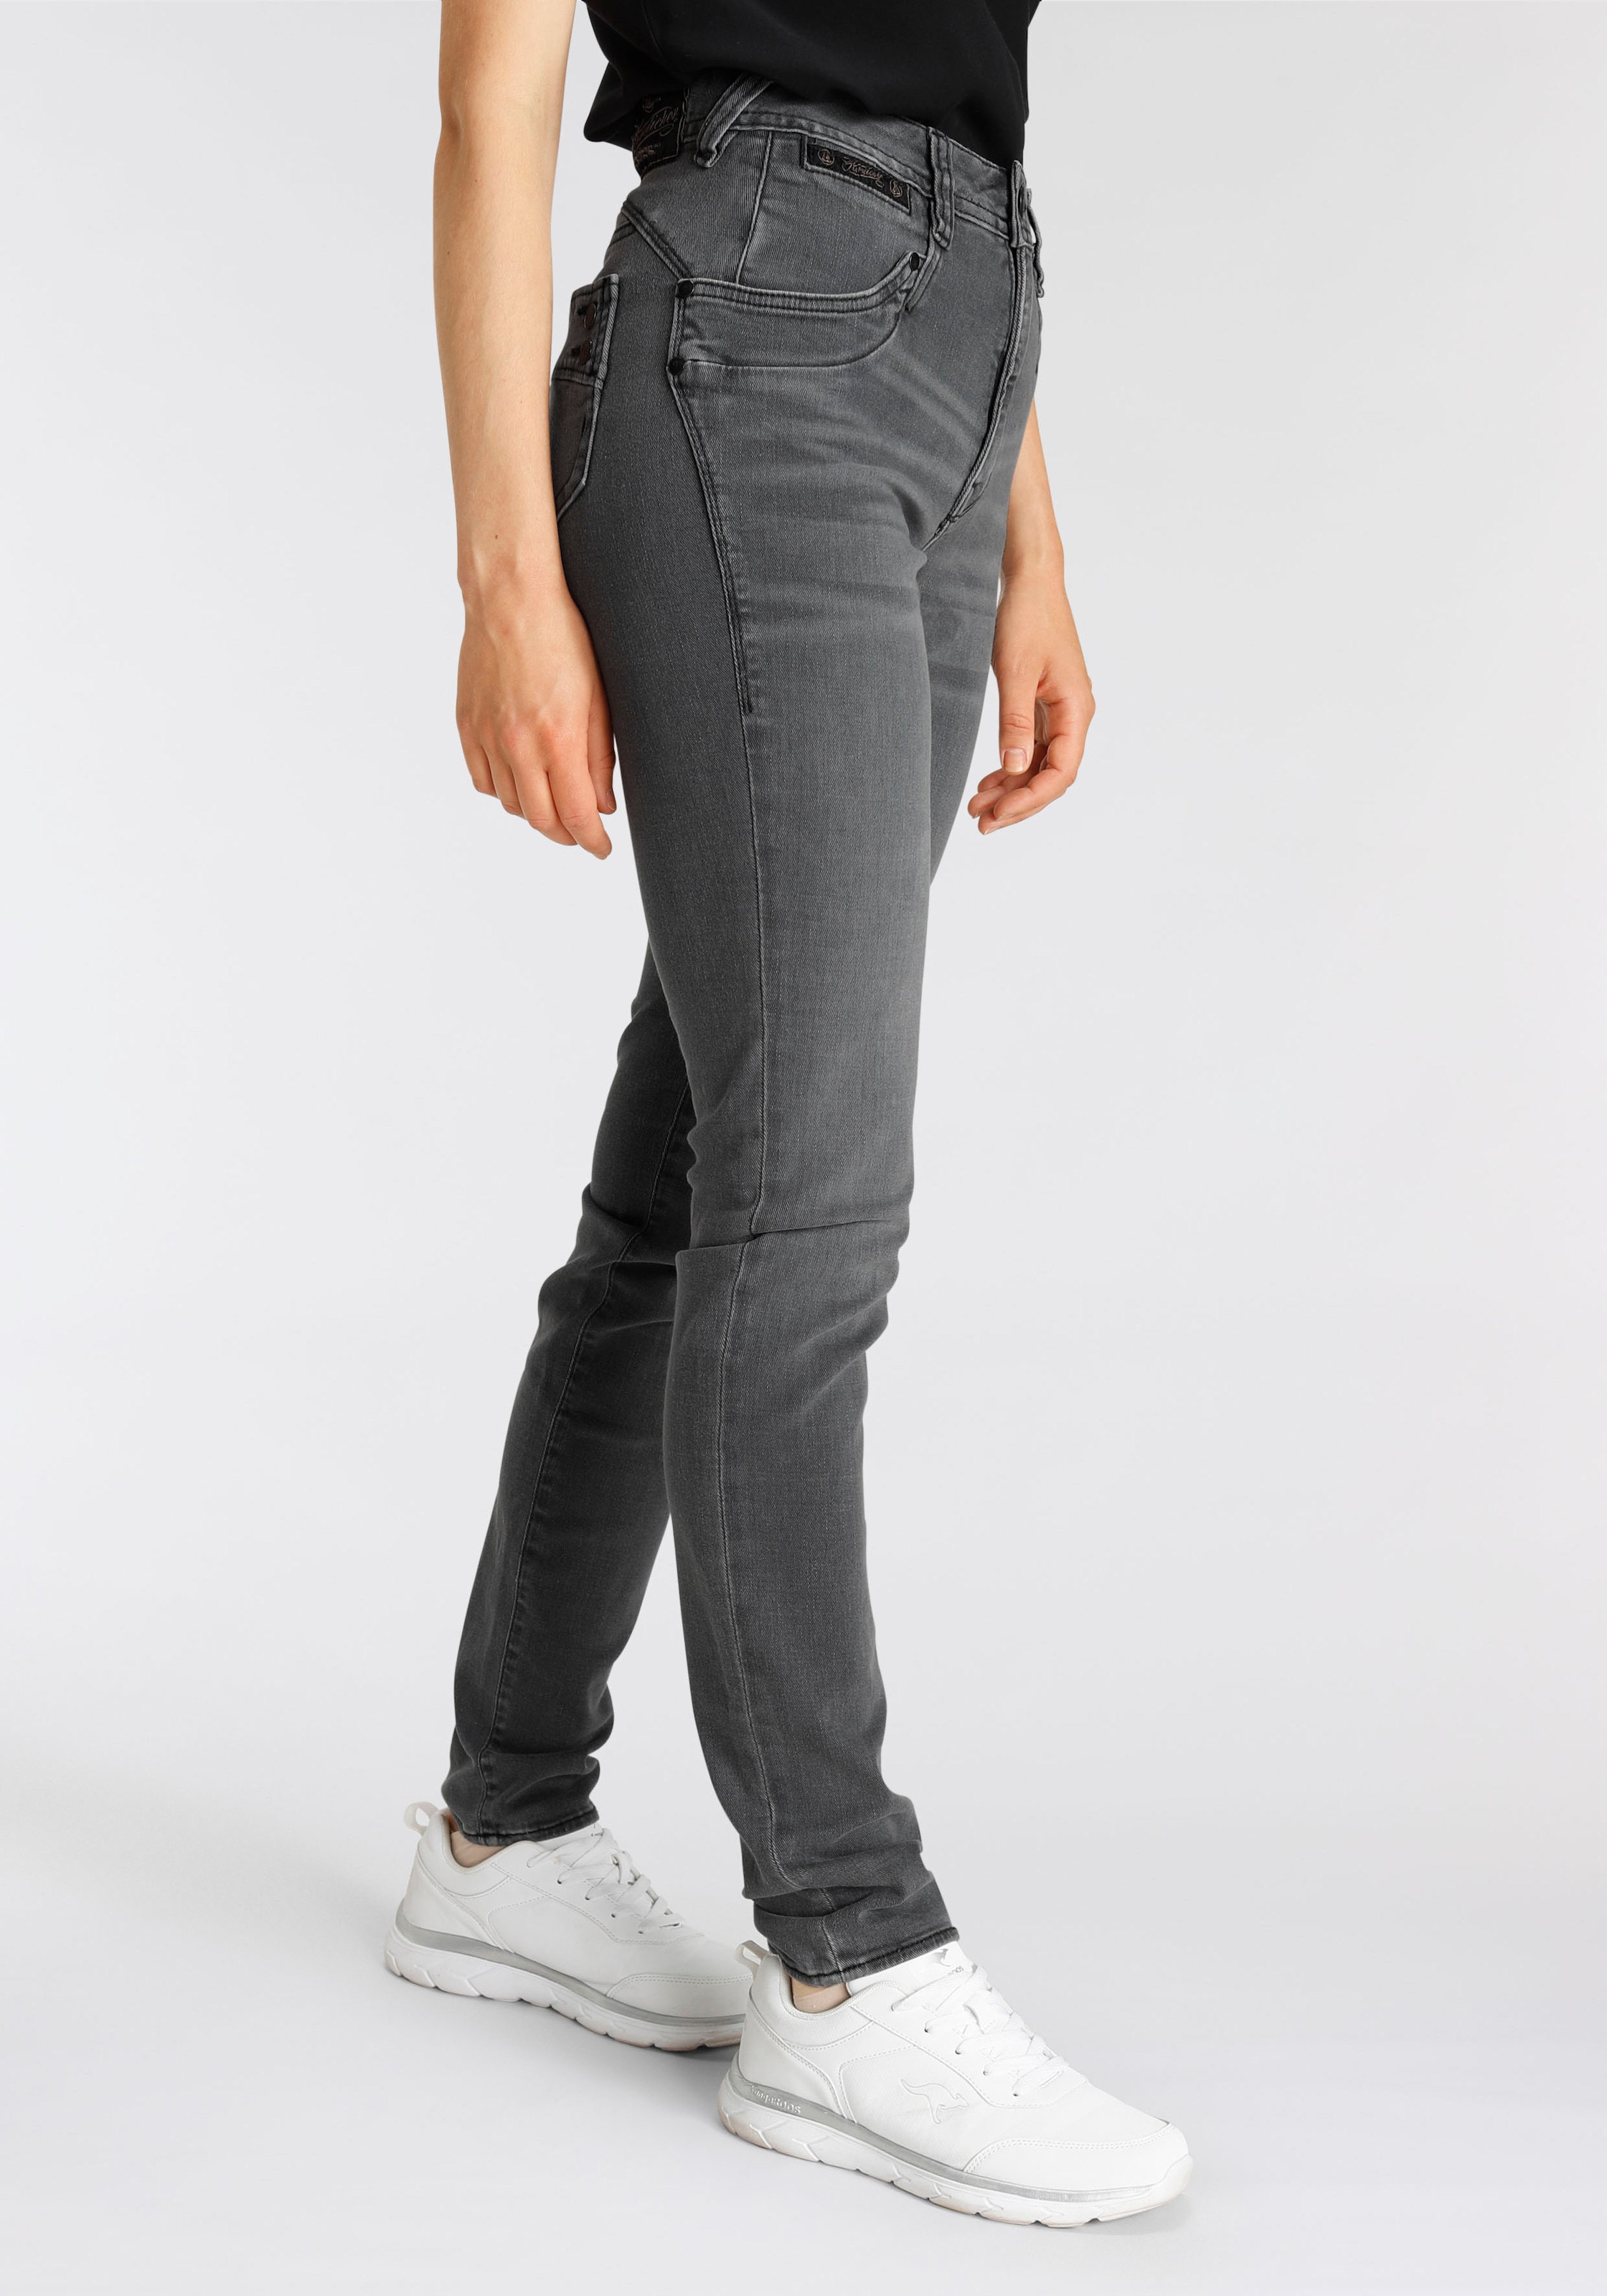 Herrlicher High-waist-Jeans dank bei umweltfreundlich ORGANIC Kitotex HI SLIM TOUCH«, DENIM »PIPER ♕ Technologie CASHMERE